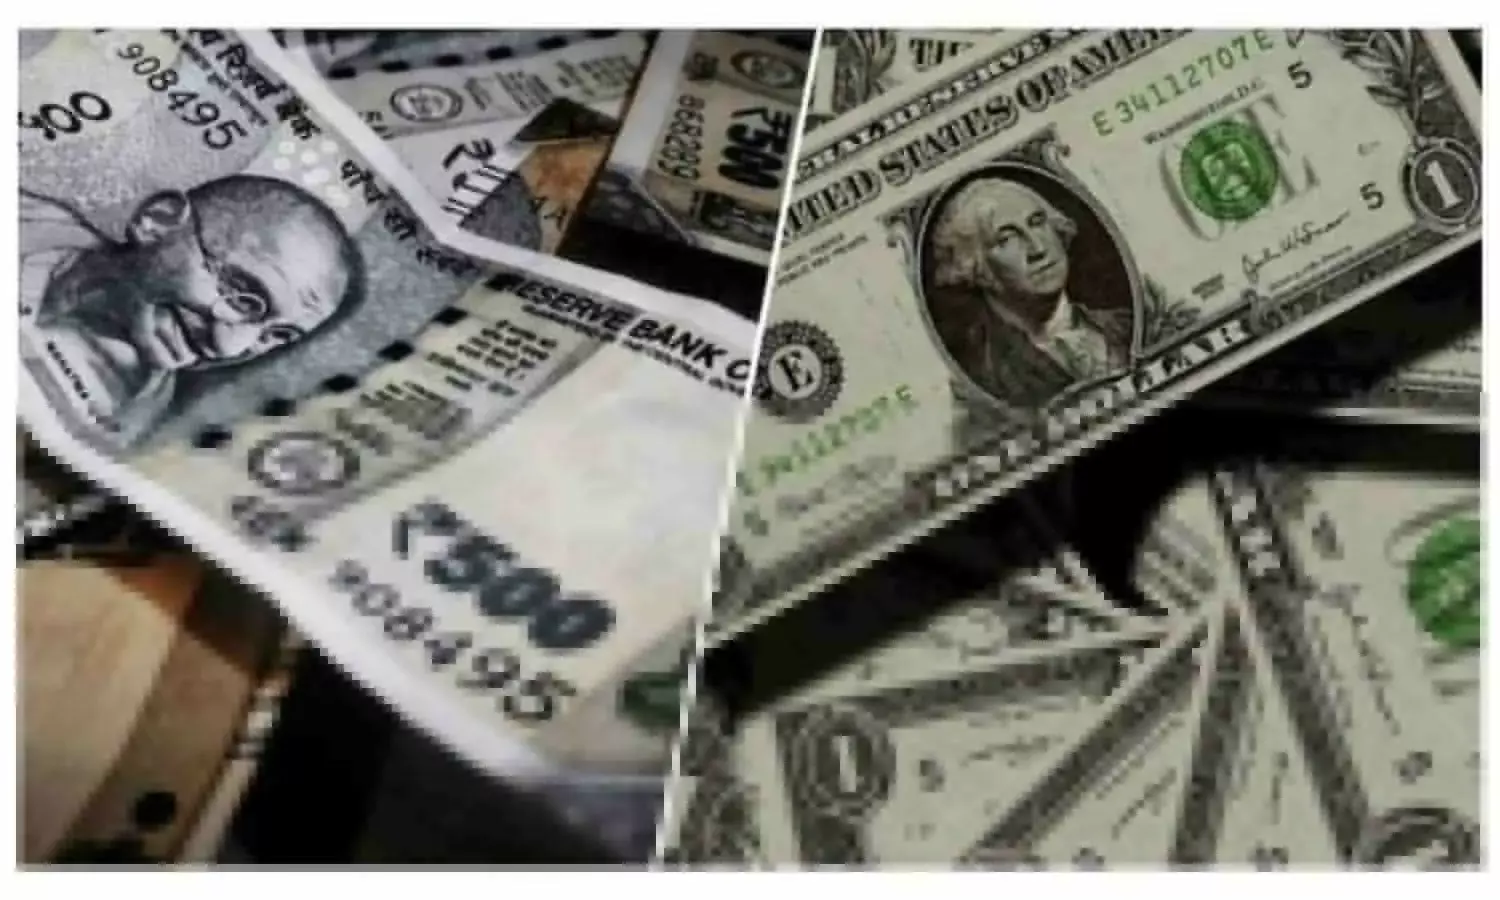 Dollar vs Rupee